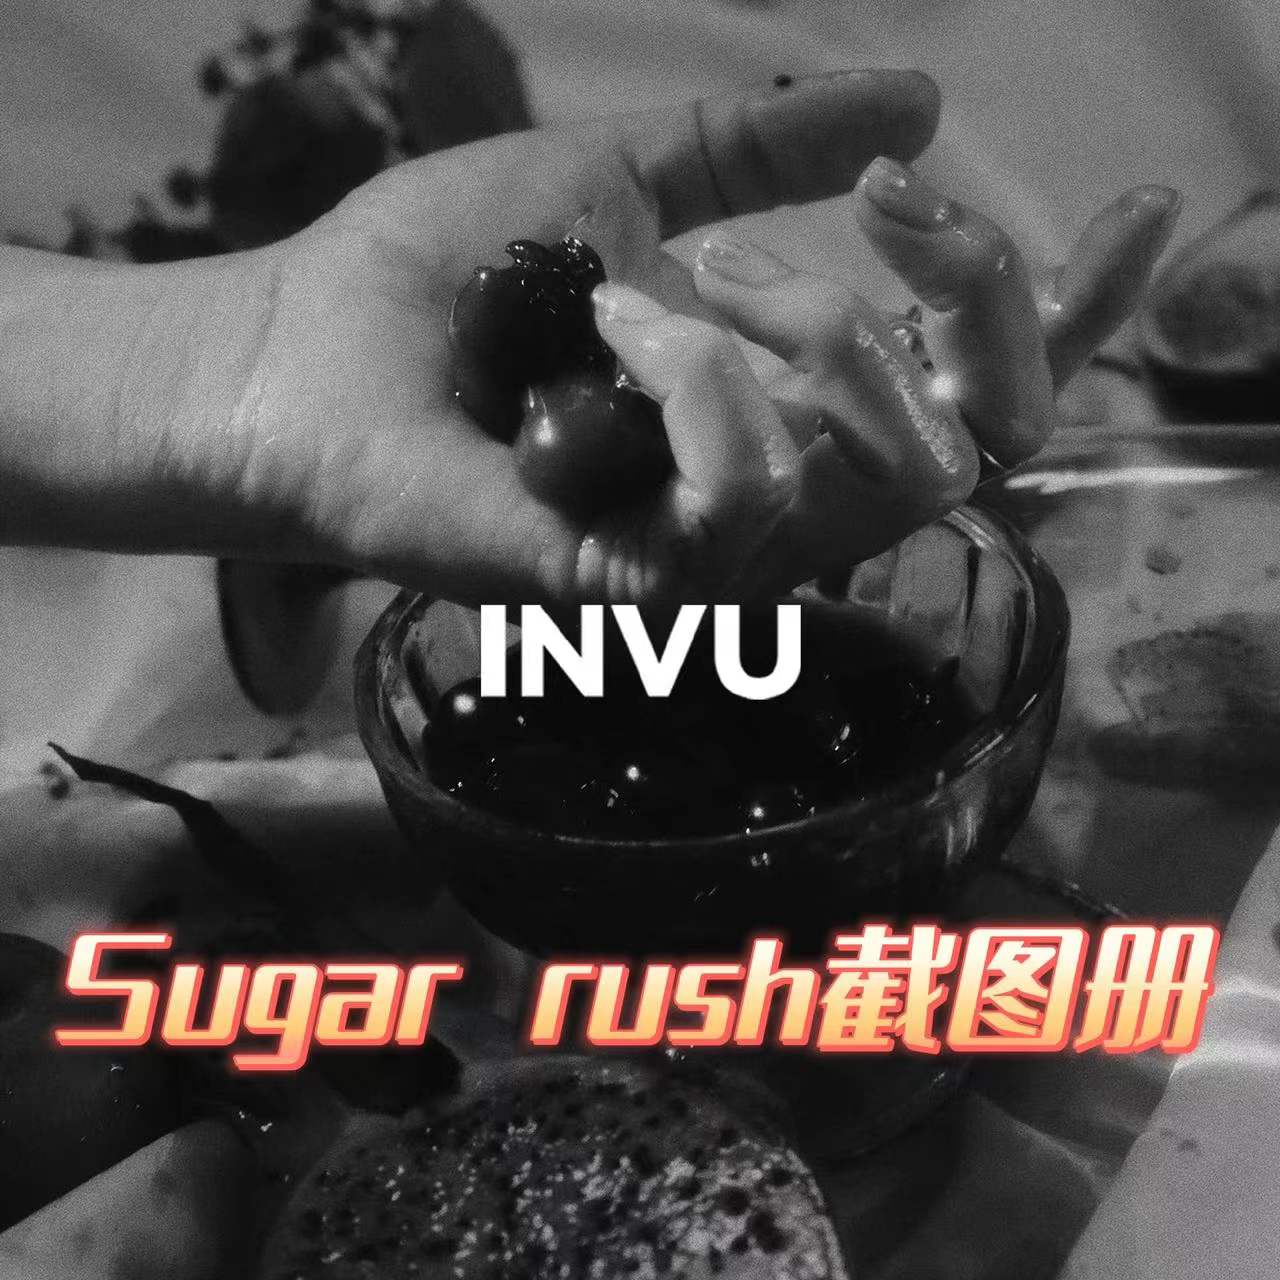 [全款 Sugar rush截图册特典专] TAEYEON - 正规专辑 Vol.3 [INVU] (ORANGE/BLUE Ver.) (随机版本)_金泰妍吧